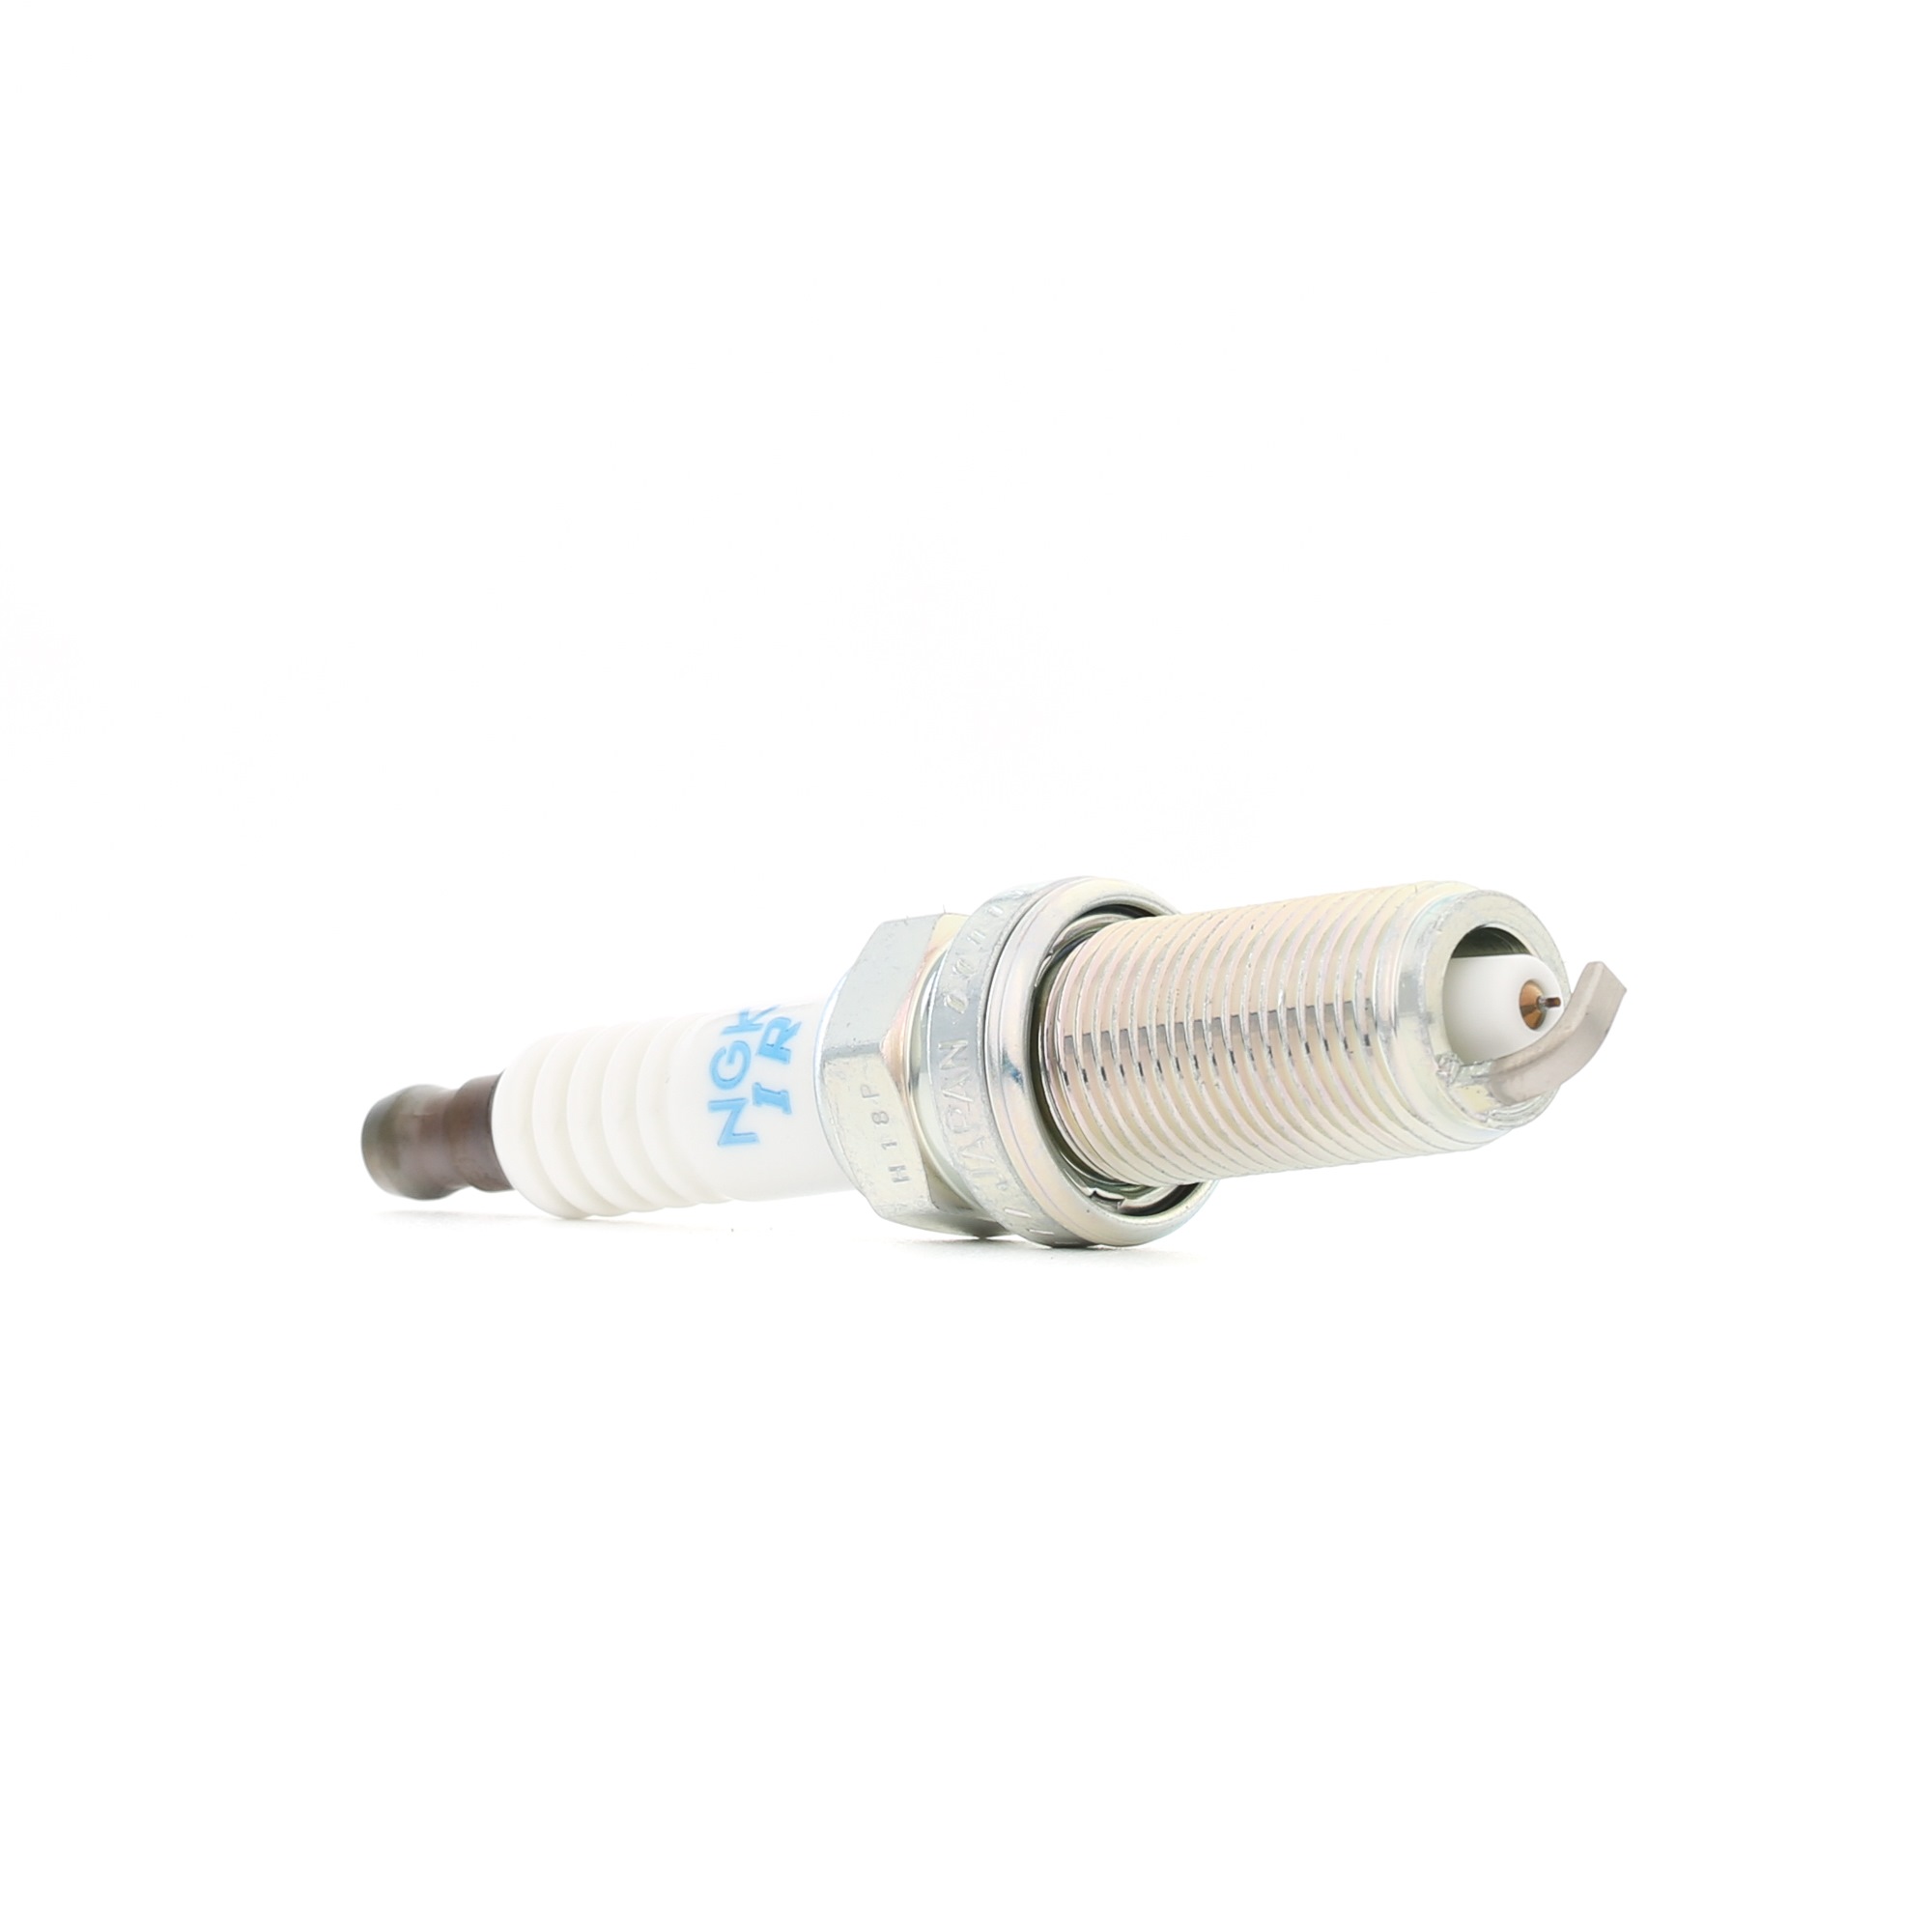 NGK 97362 Spark plug M14 x 1,25, Spanner Size: 16 mm